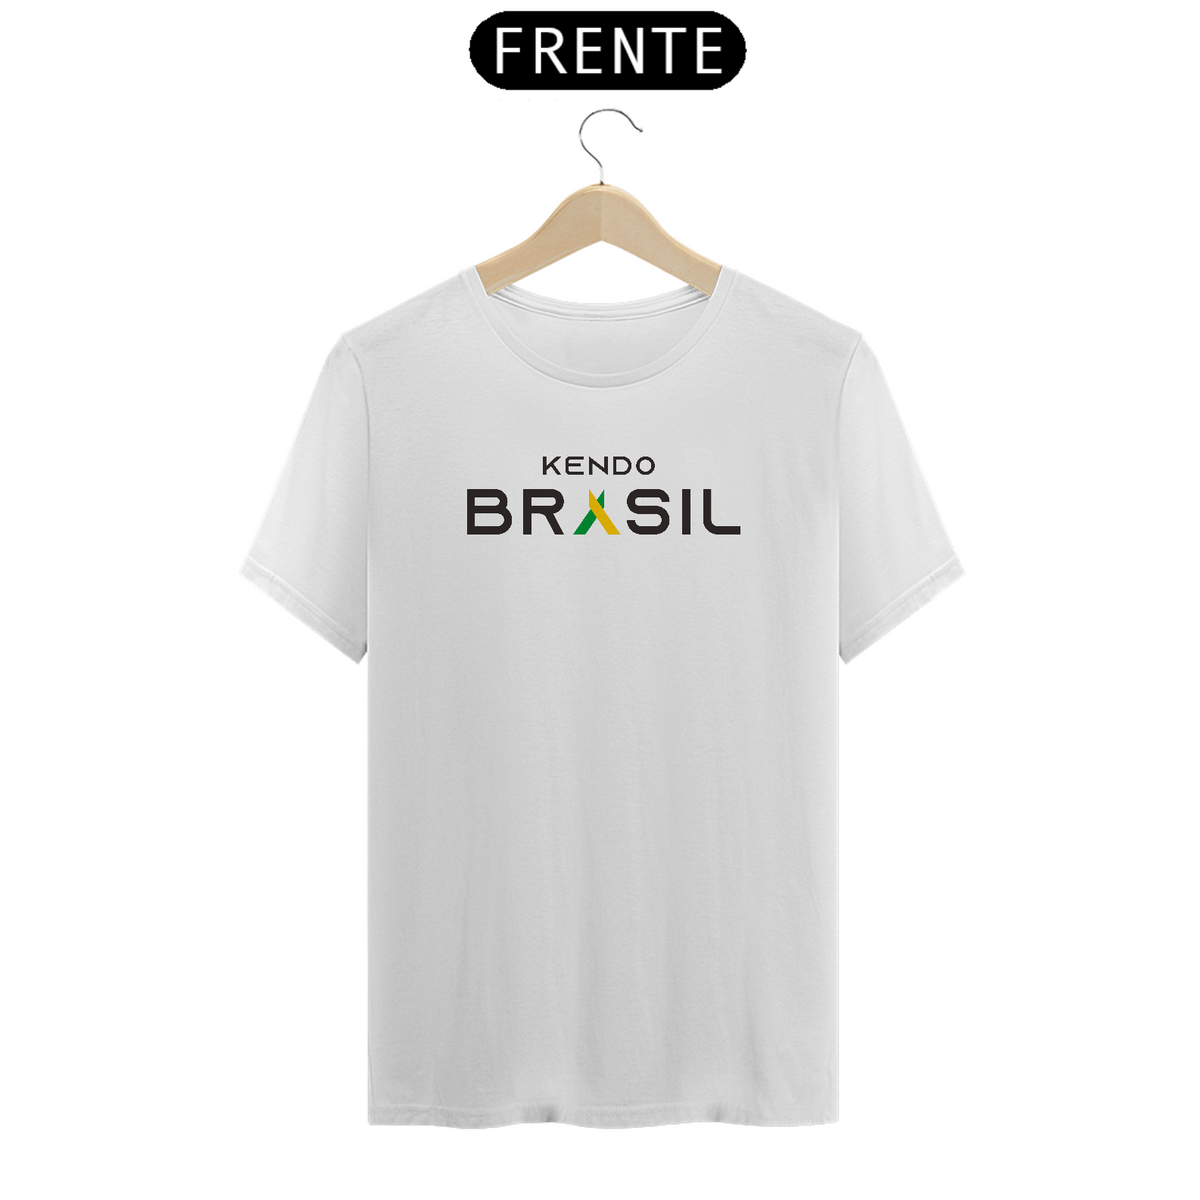 Nome do produto: Kendo Brazil (Preto)